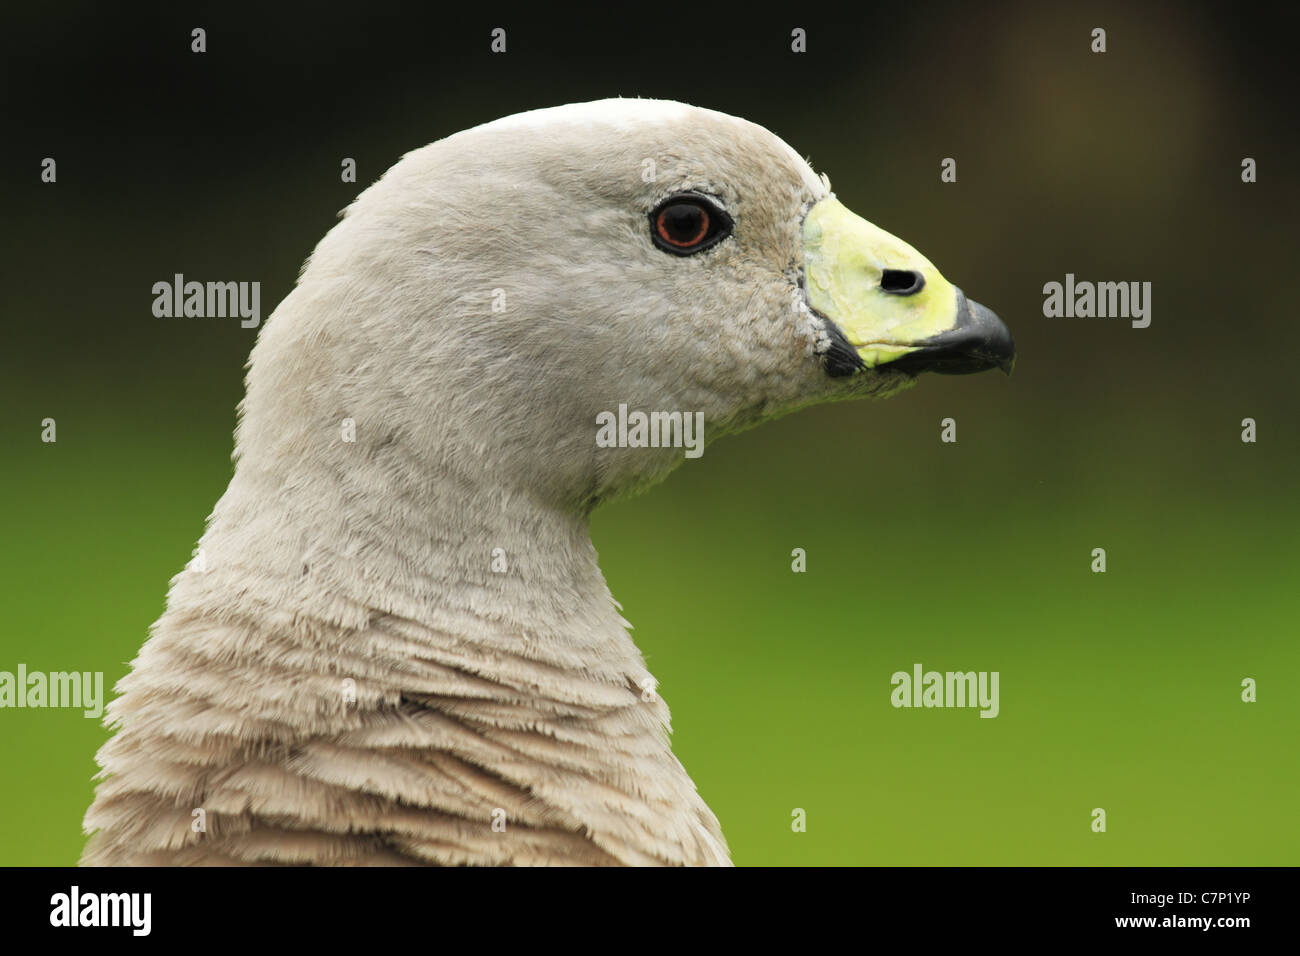 A Cape Barren Goose (Latin name: Cereopsis novaehollandiae) Stock Photo